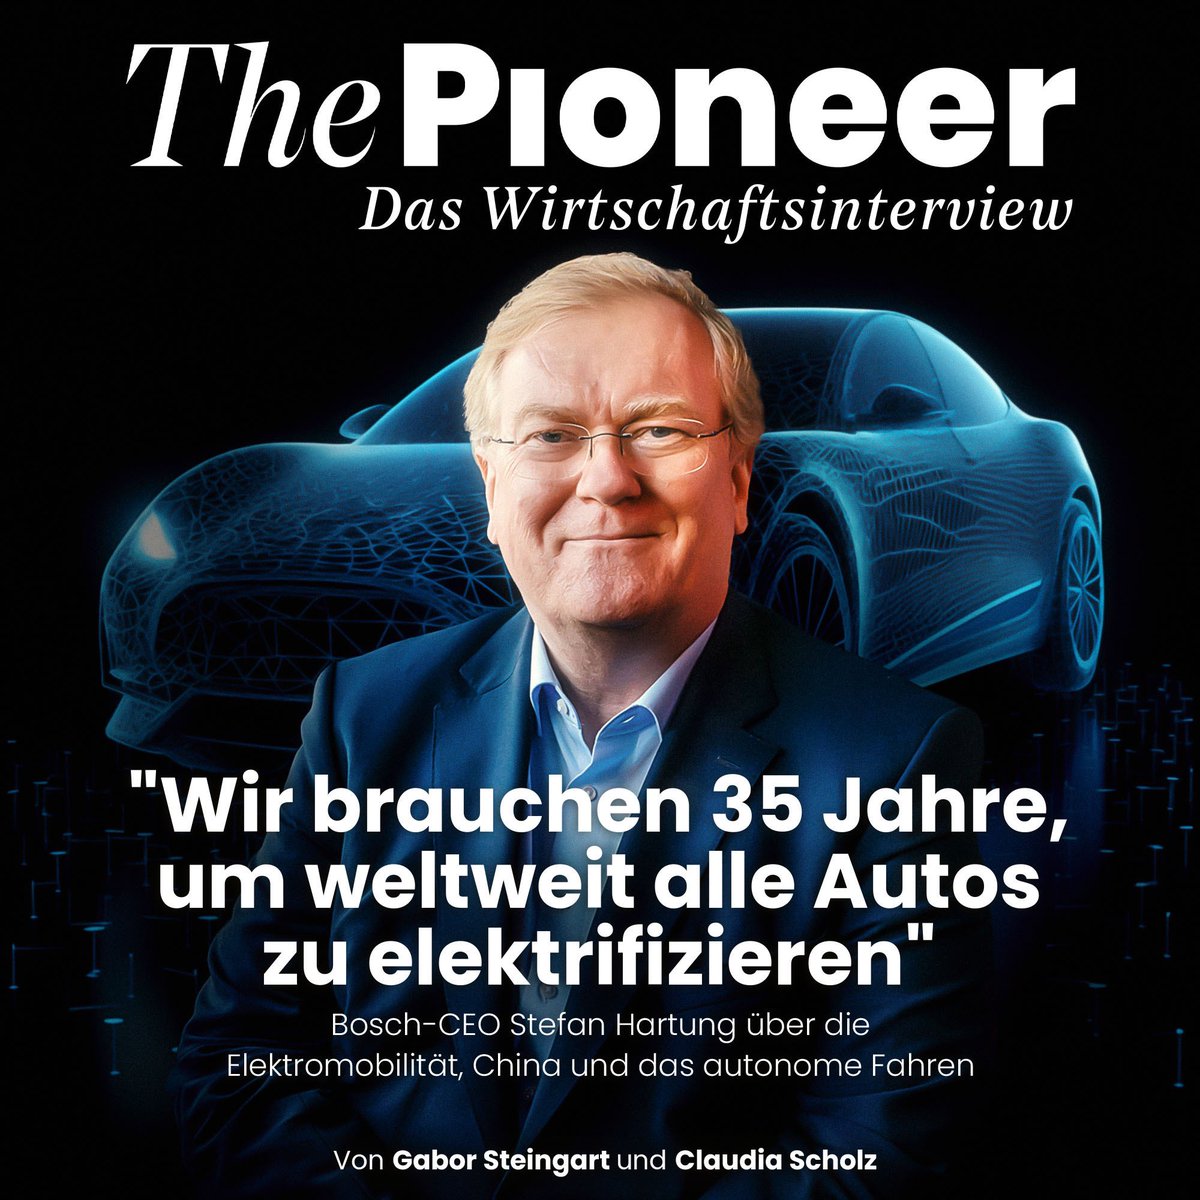 Wir haben den @BoschGlobal-CEO Stefan Hartung auf der #Pioneer One zum Interview getroffen und über die Elektromobilität, das europäische Verbrenner-Aus, chinesische Autobauer, das autonome Fahren, Tesla und KI gesprochen. Seine Insights lest ihr hier: thepioneer.de/originals/othe…